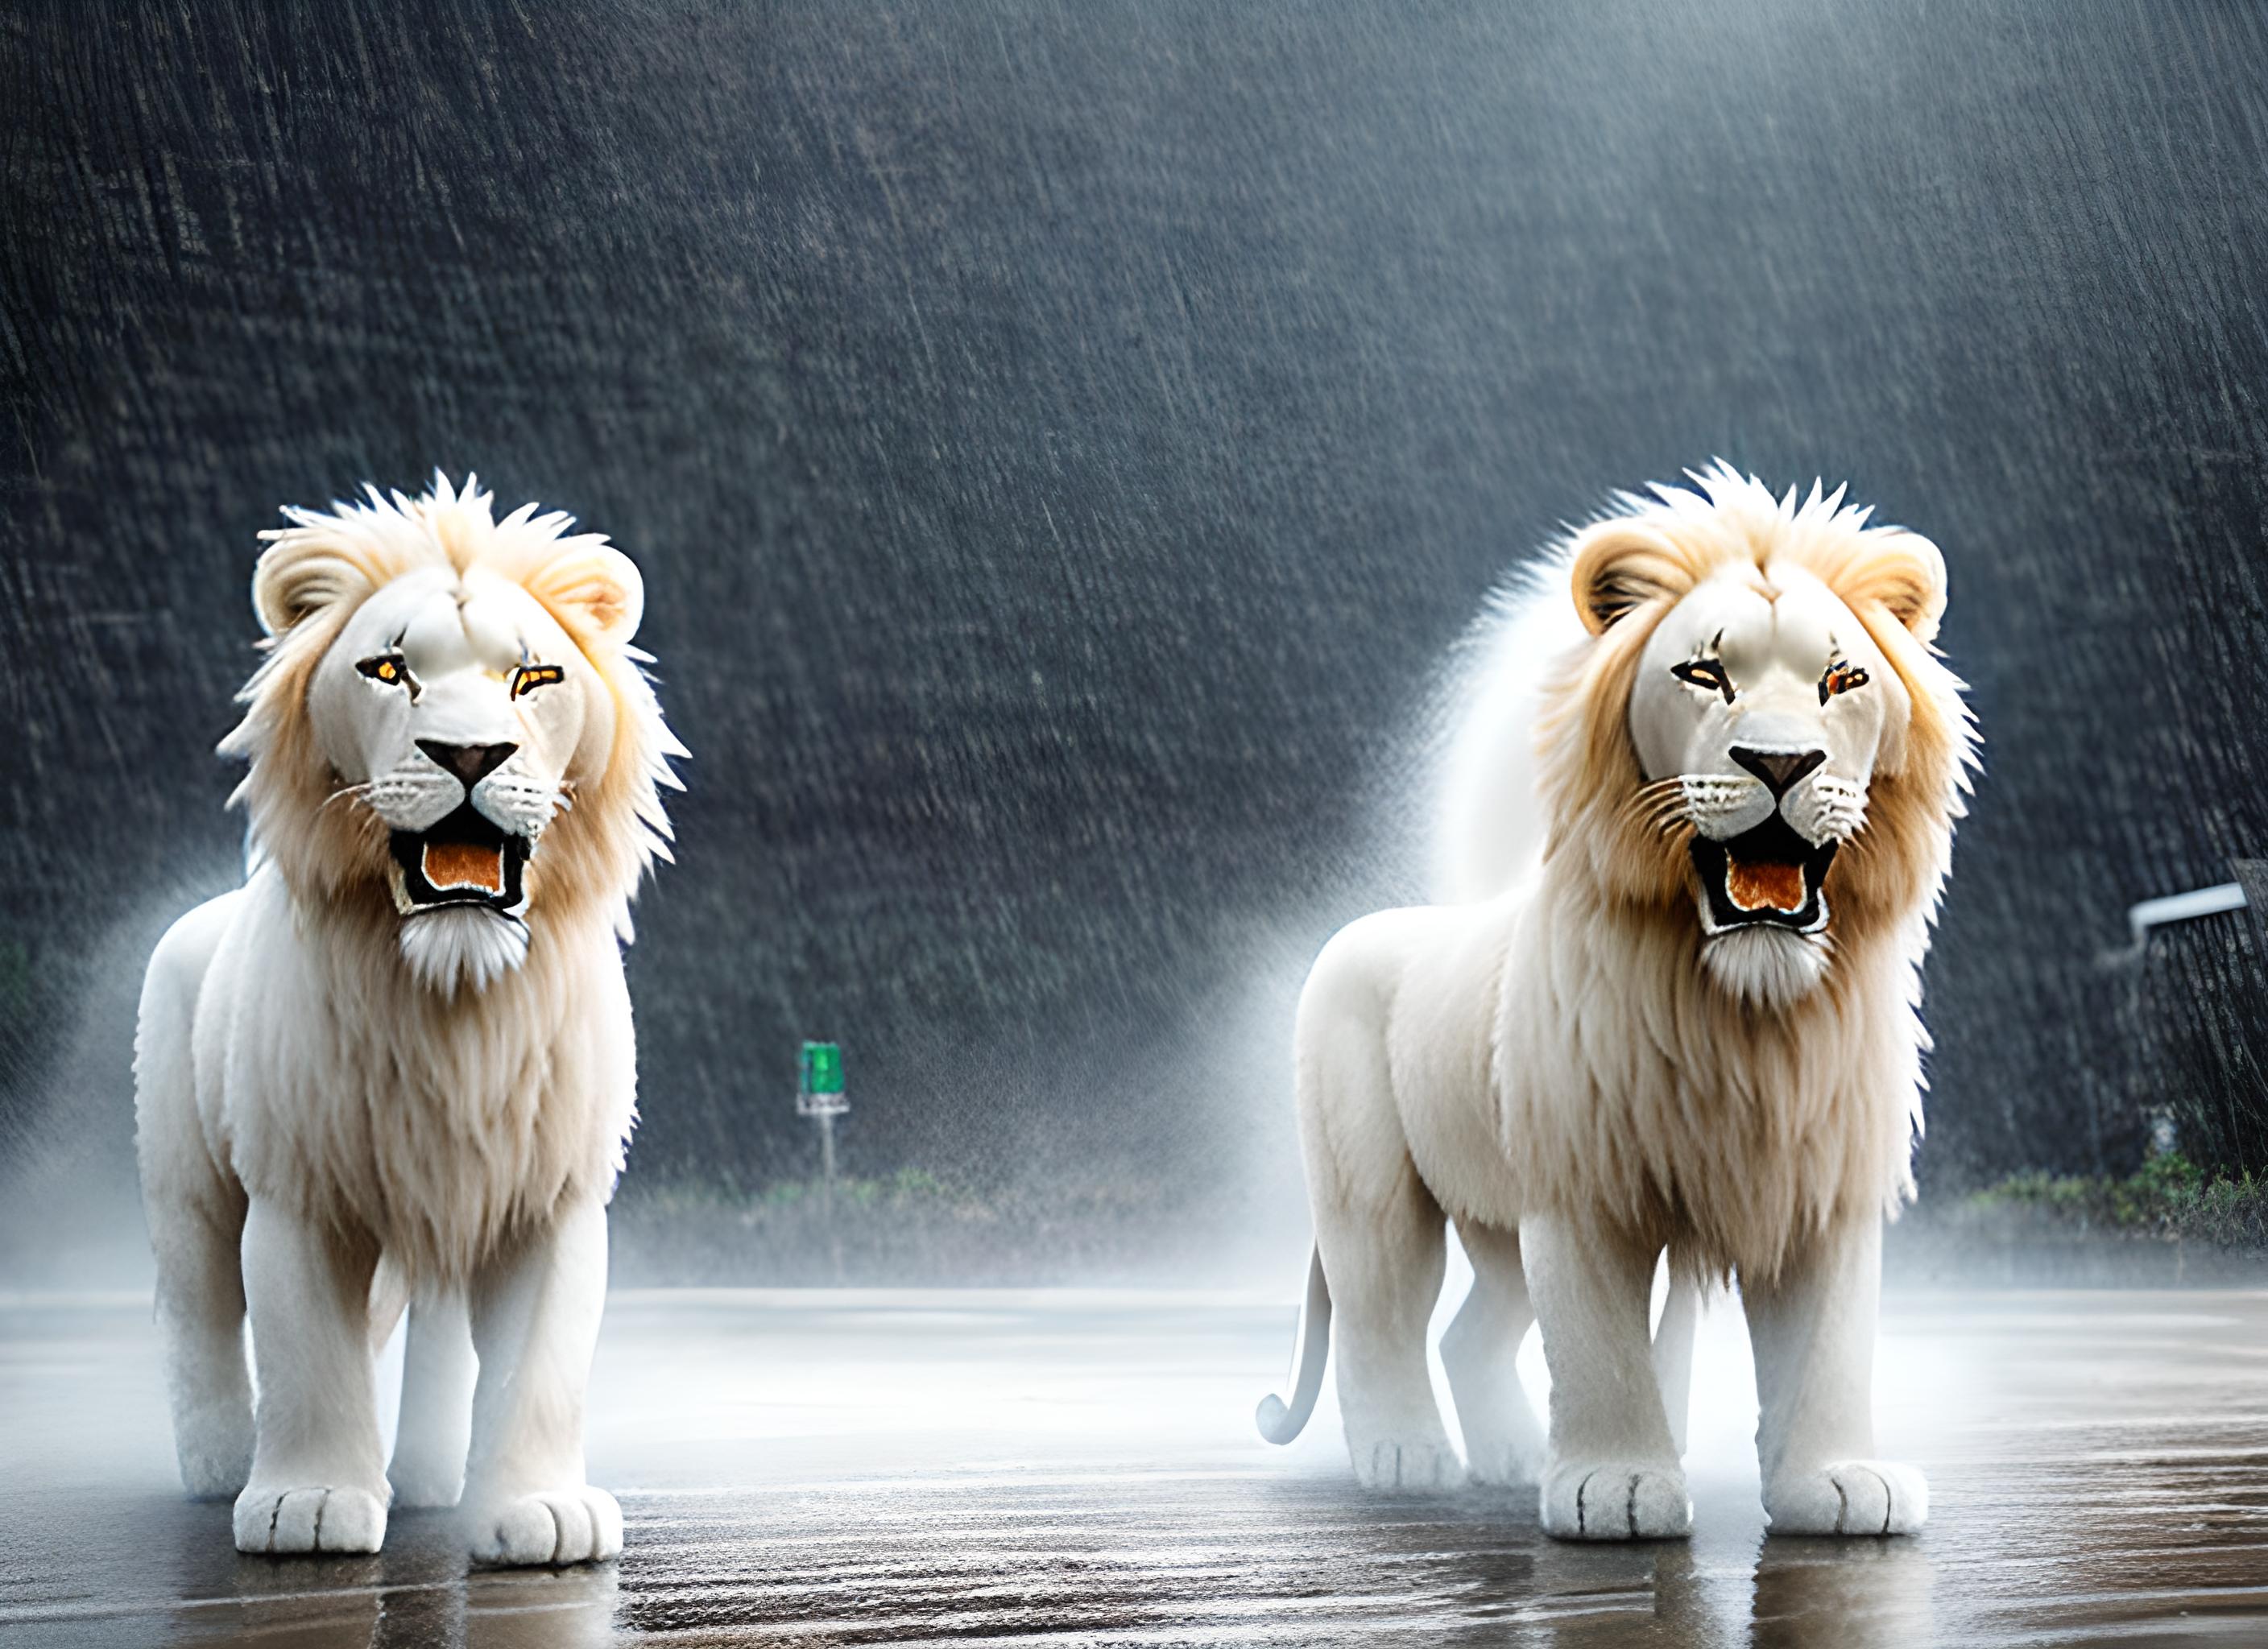 雨中醒狮